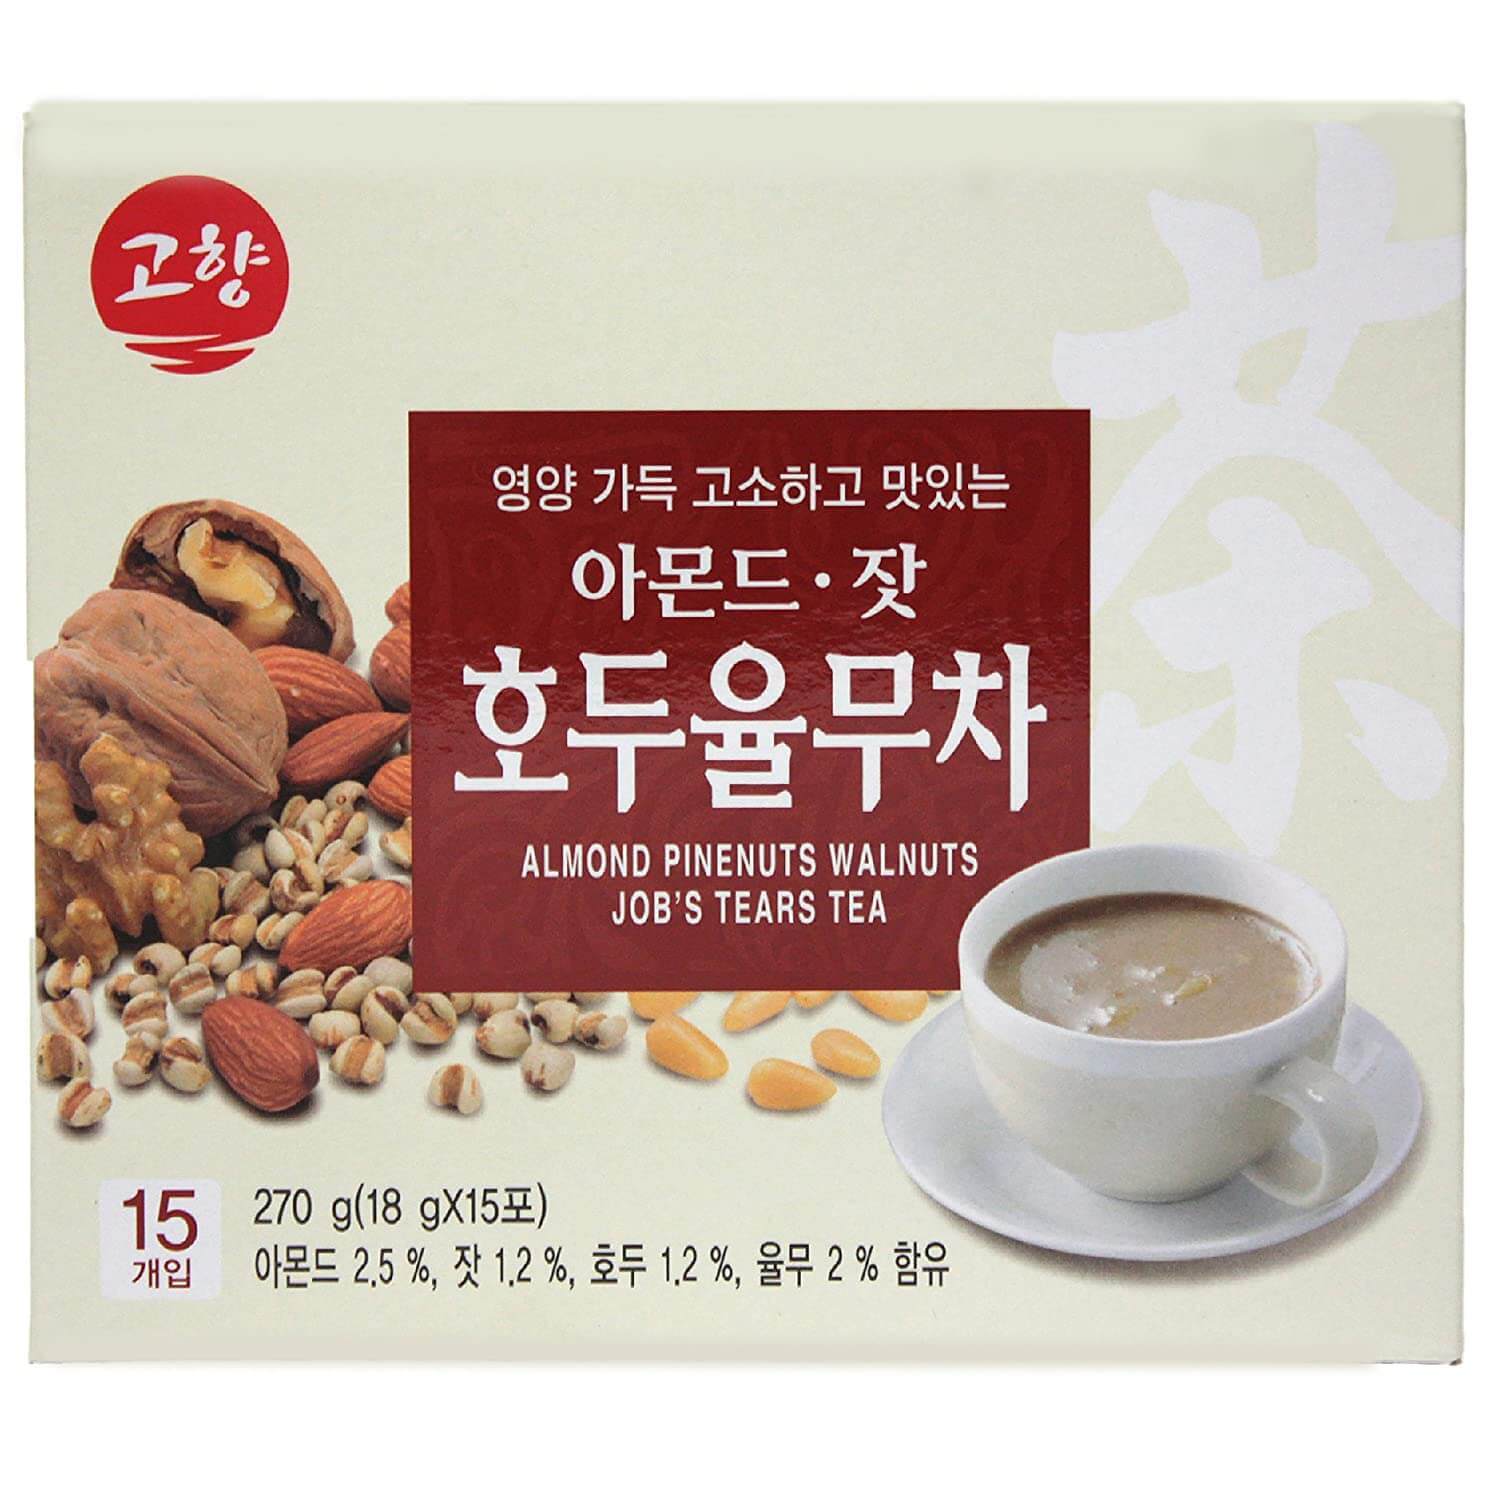 Korean One Almond Pinenuts Walnuts Job's Tears Tea